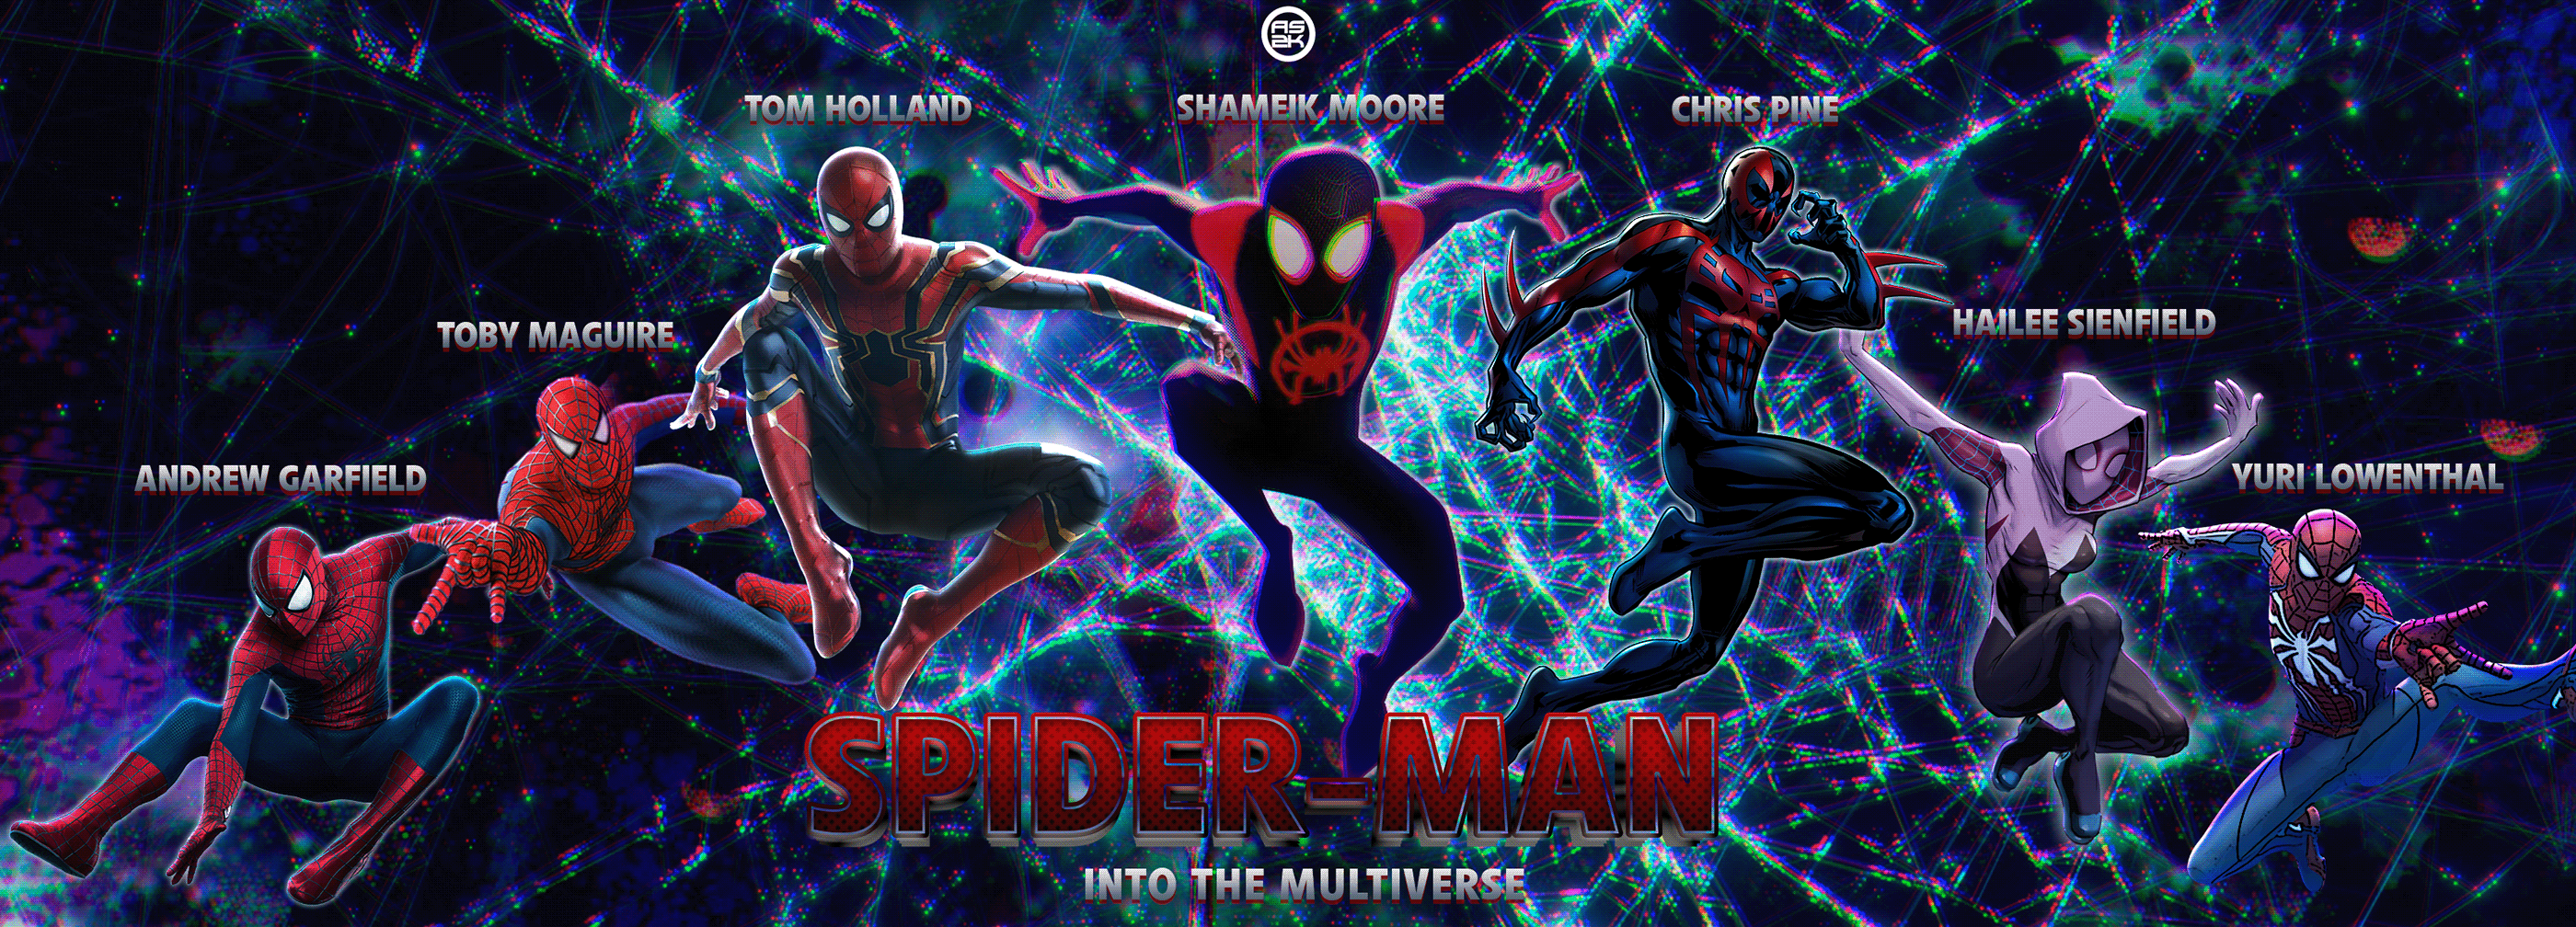 Skibidi multiverse 2. Человек паук Multiverse. Spider man Multiverse 2. Человек паук через вселенные лого. Spider man Multiverse 2 побег Майлса.